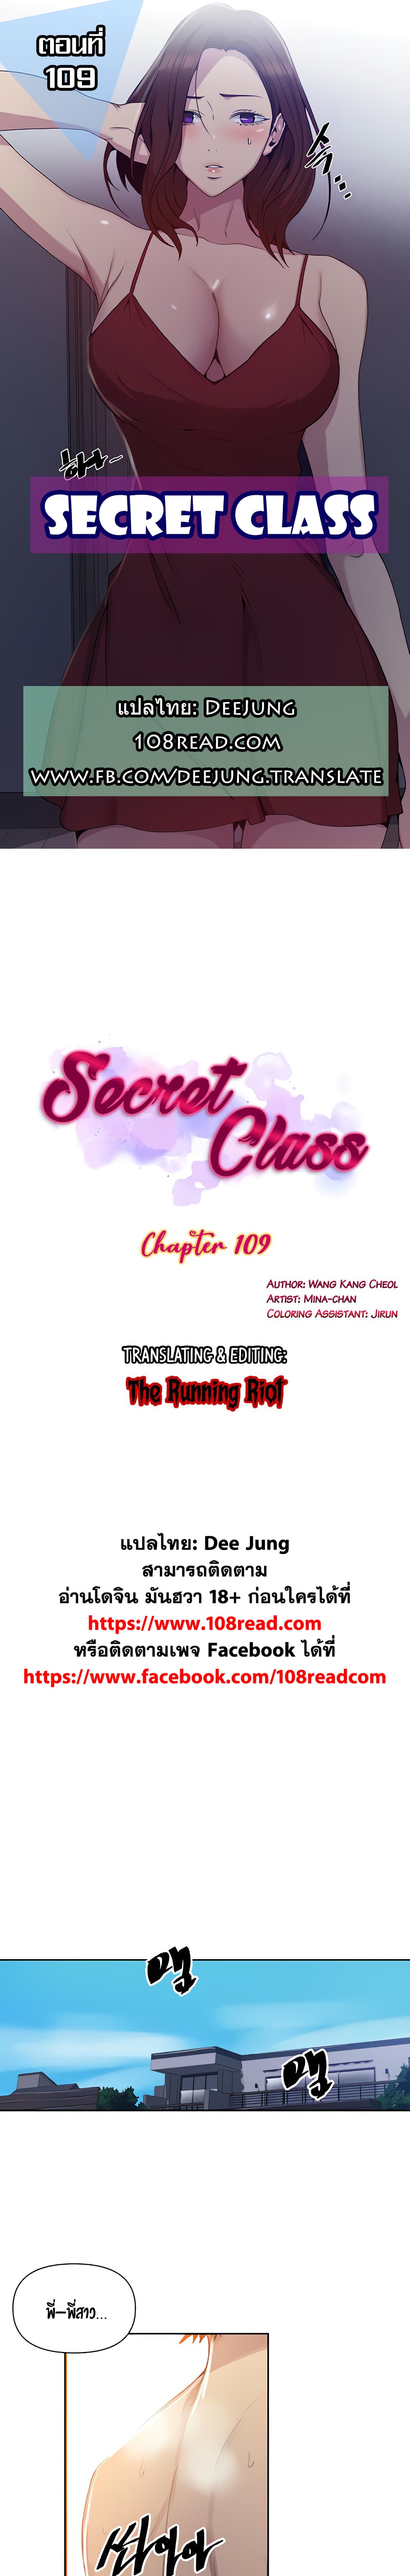 Secret Class 109 01